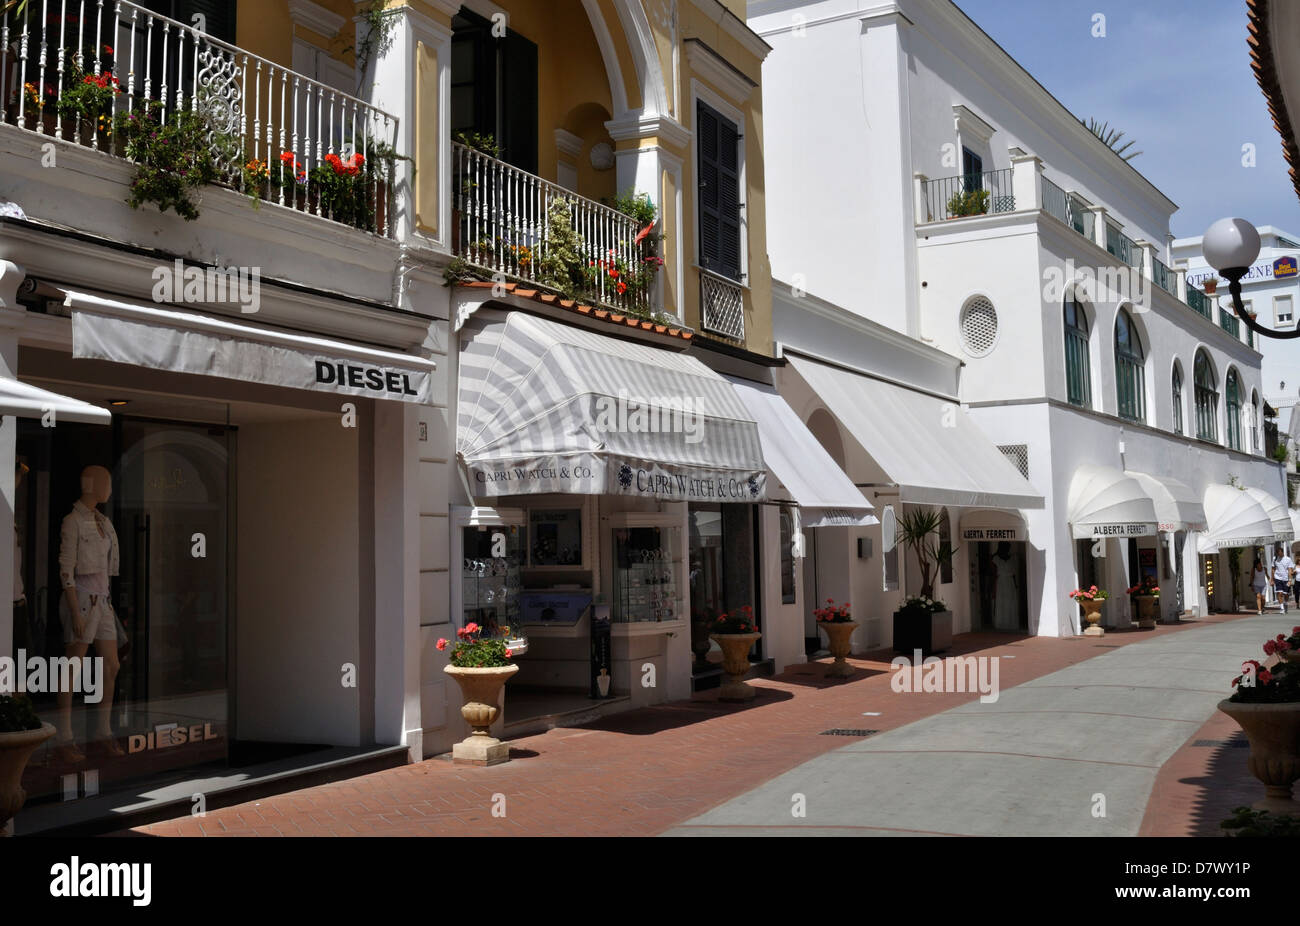 Capri abrite de nombreuses boutiques de marque, y compris le diesel, Gucci et Alberta Ferretti. Banque D'Images